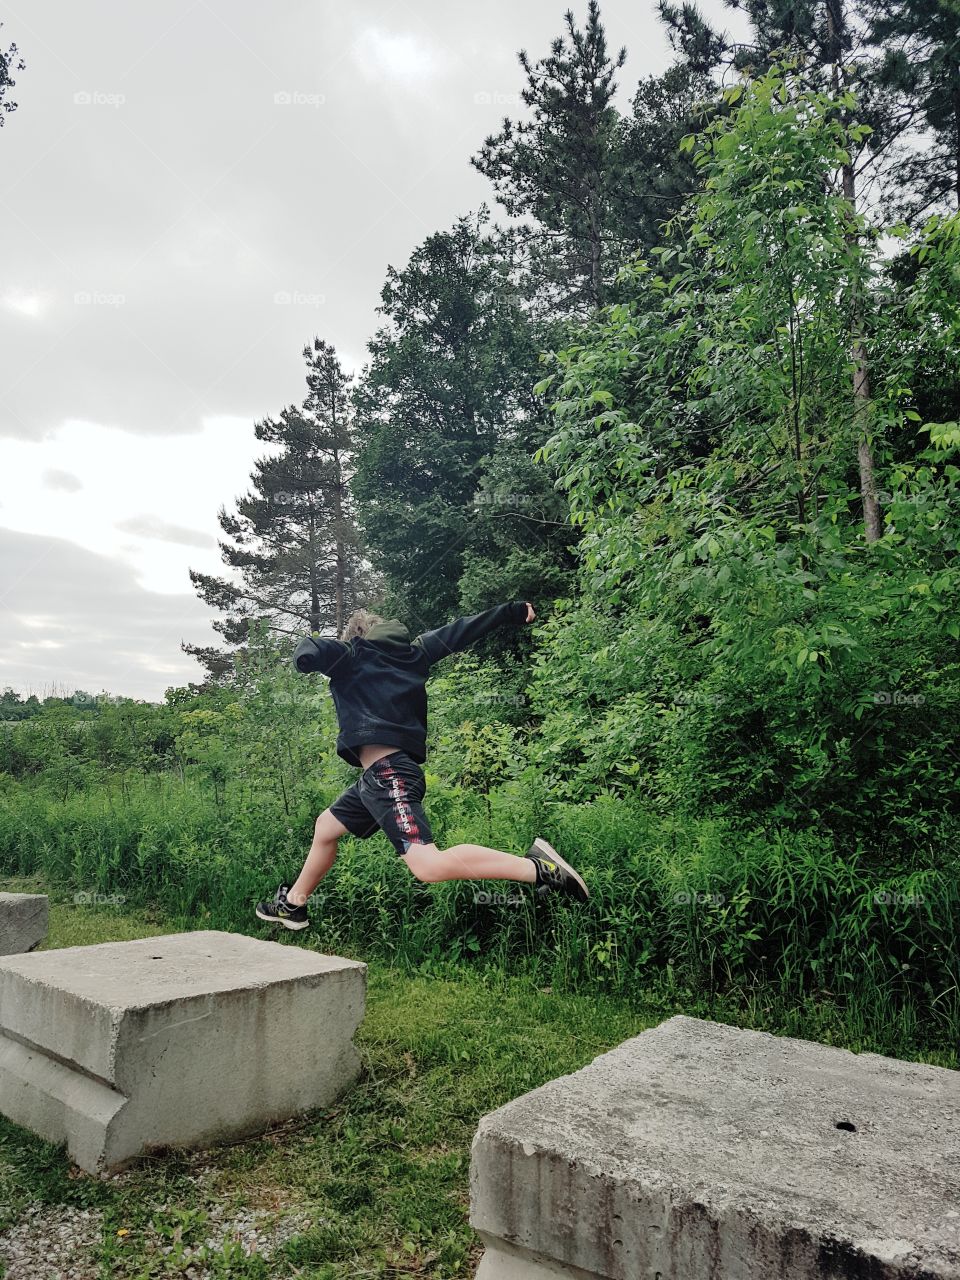 A boy jumping between cement blocks.